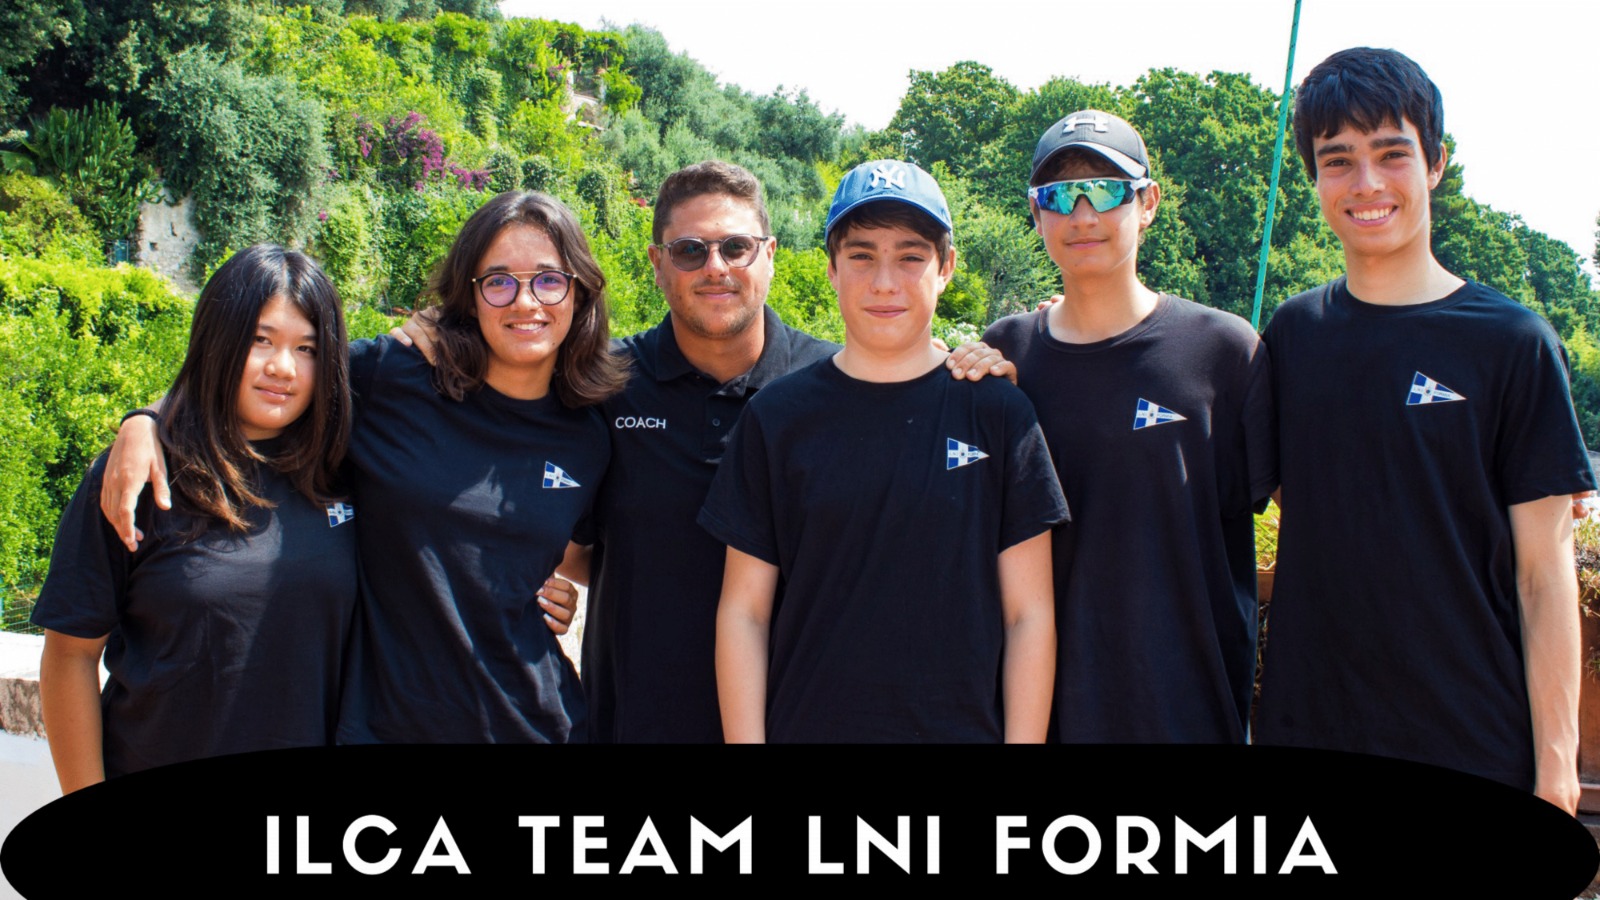 Παγκόσμιο Πρωτάθλημα Ιστιοπλοΐας Νέων ILCA4: οι αθλητές του LNI Formia στον Βόλο, Ελλάδα